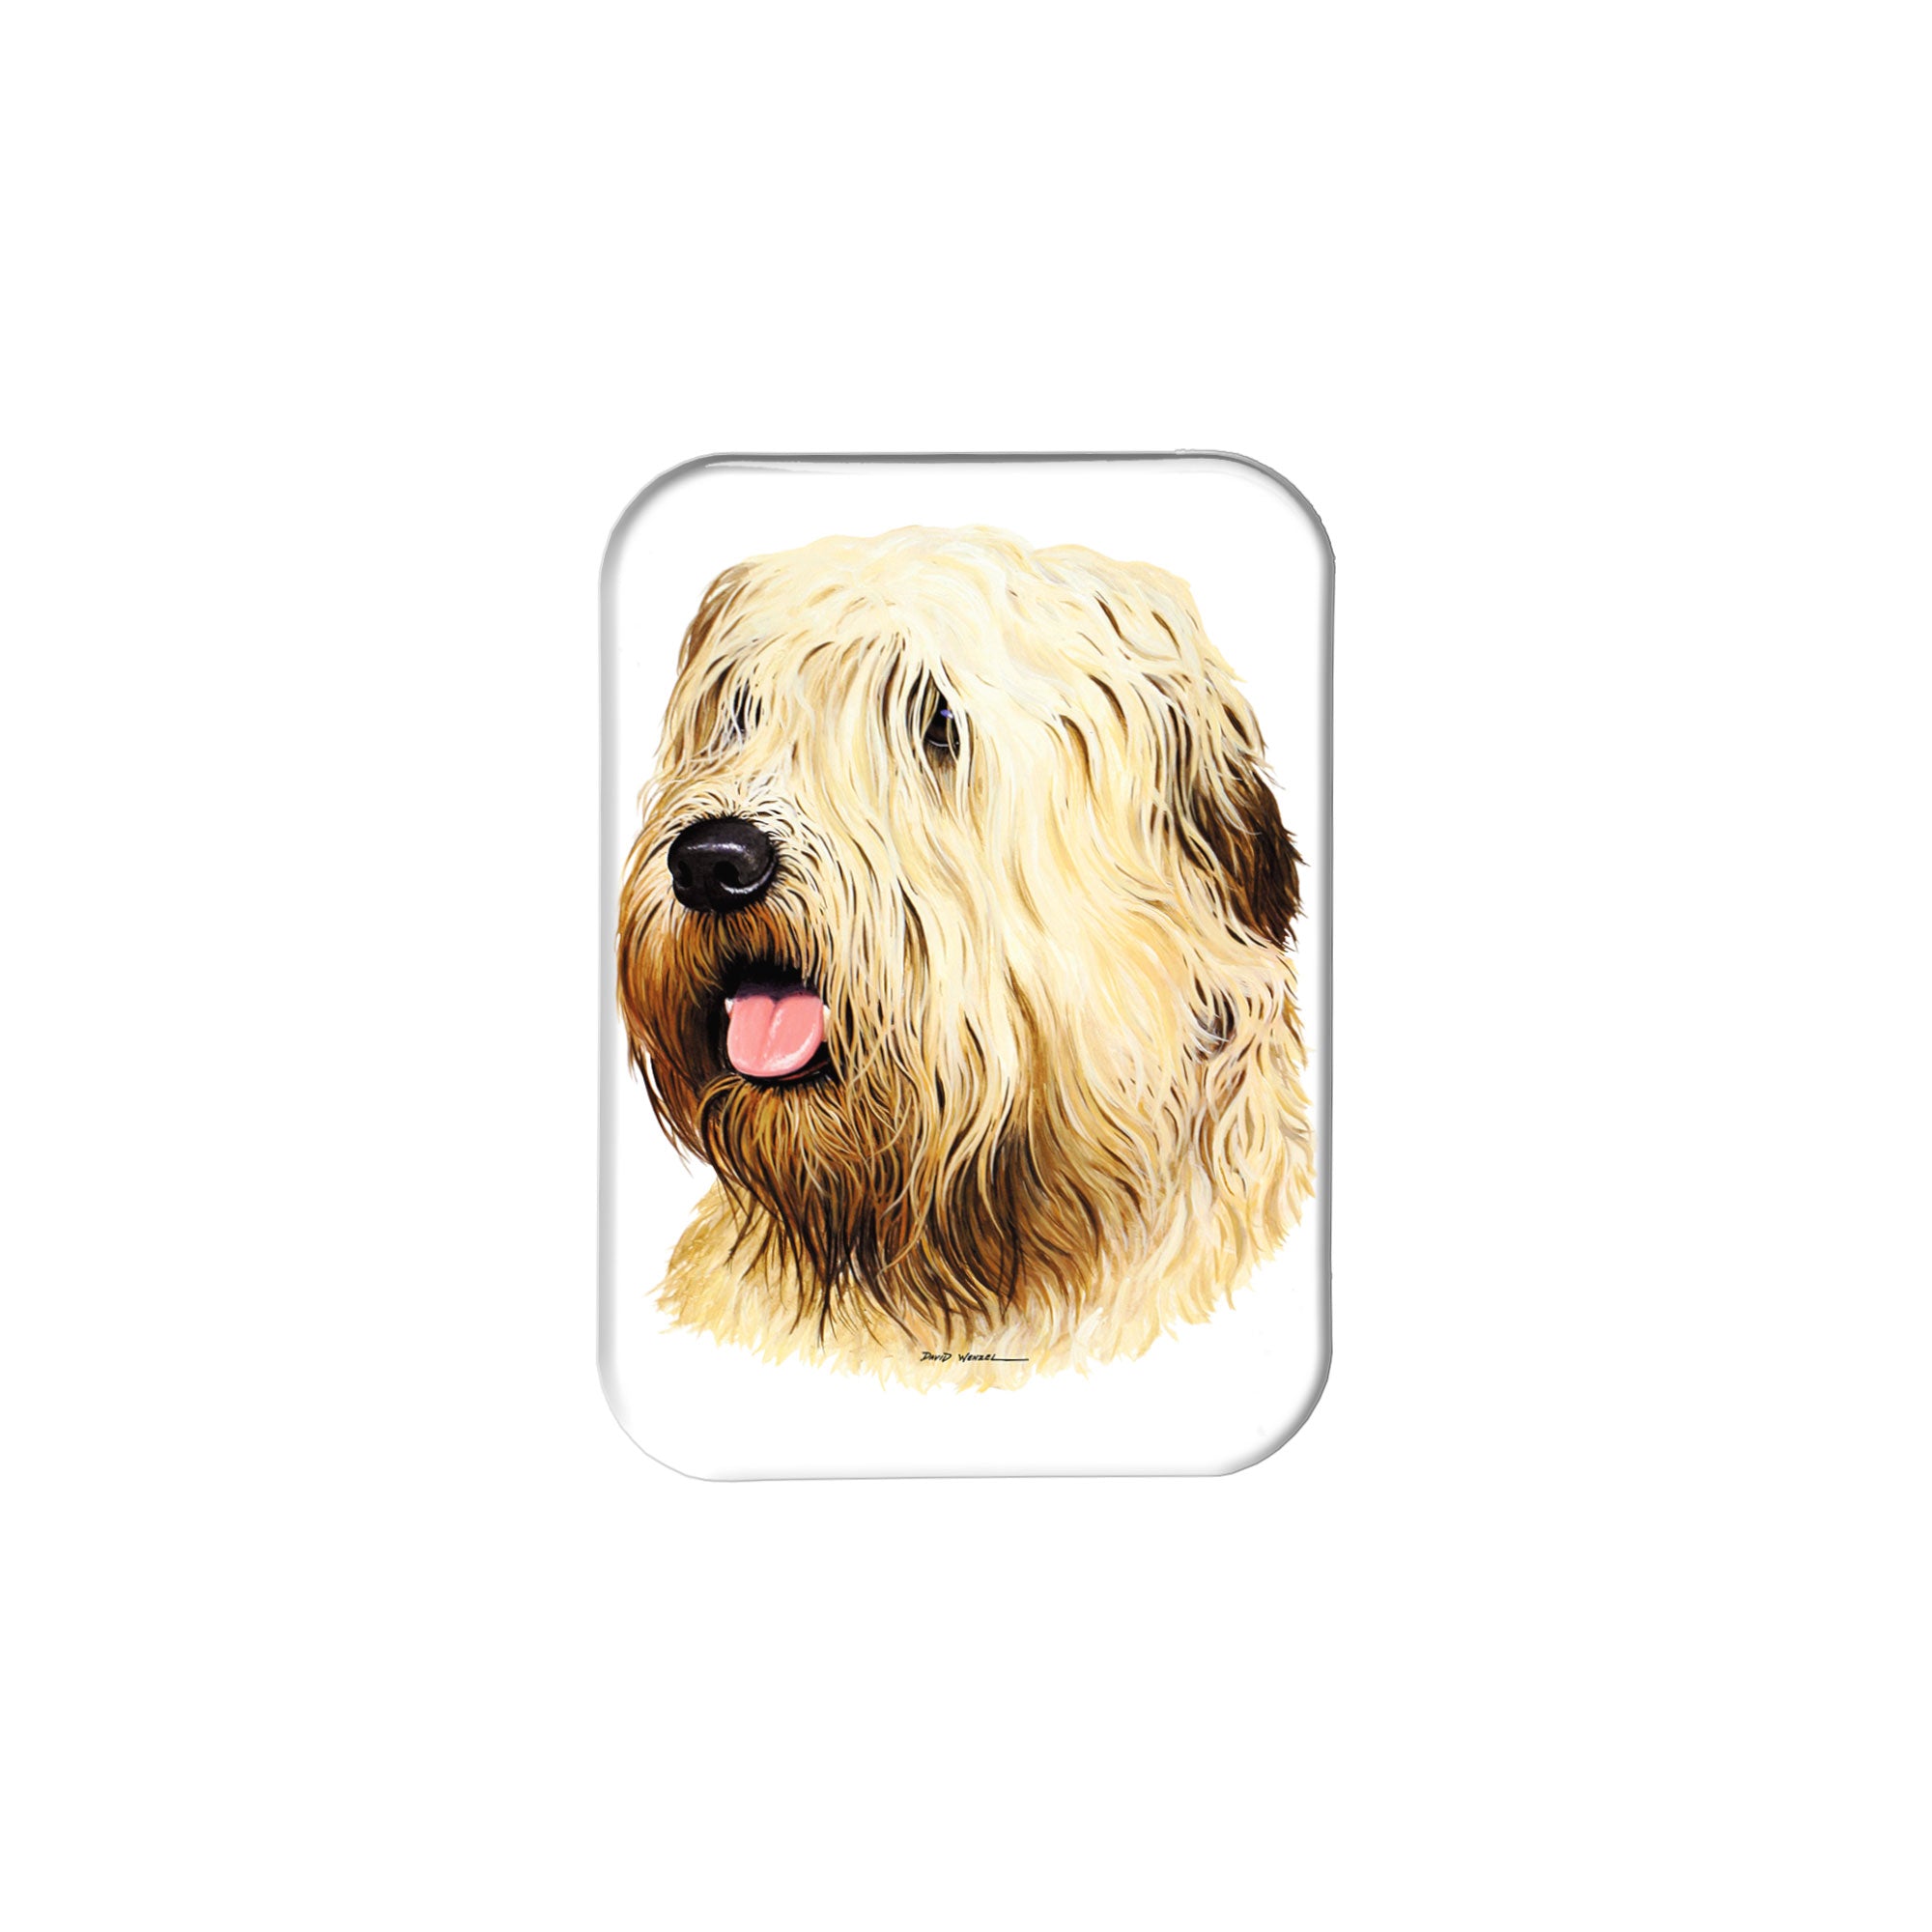 "Wheaten Terrier" - 2.5" X 3.5" Rectangle Fridge Magnets